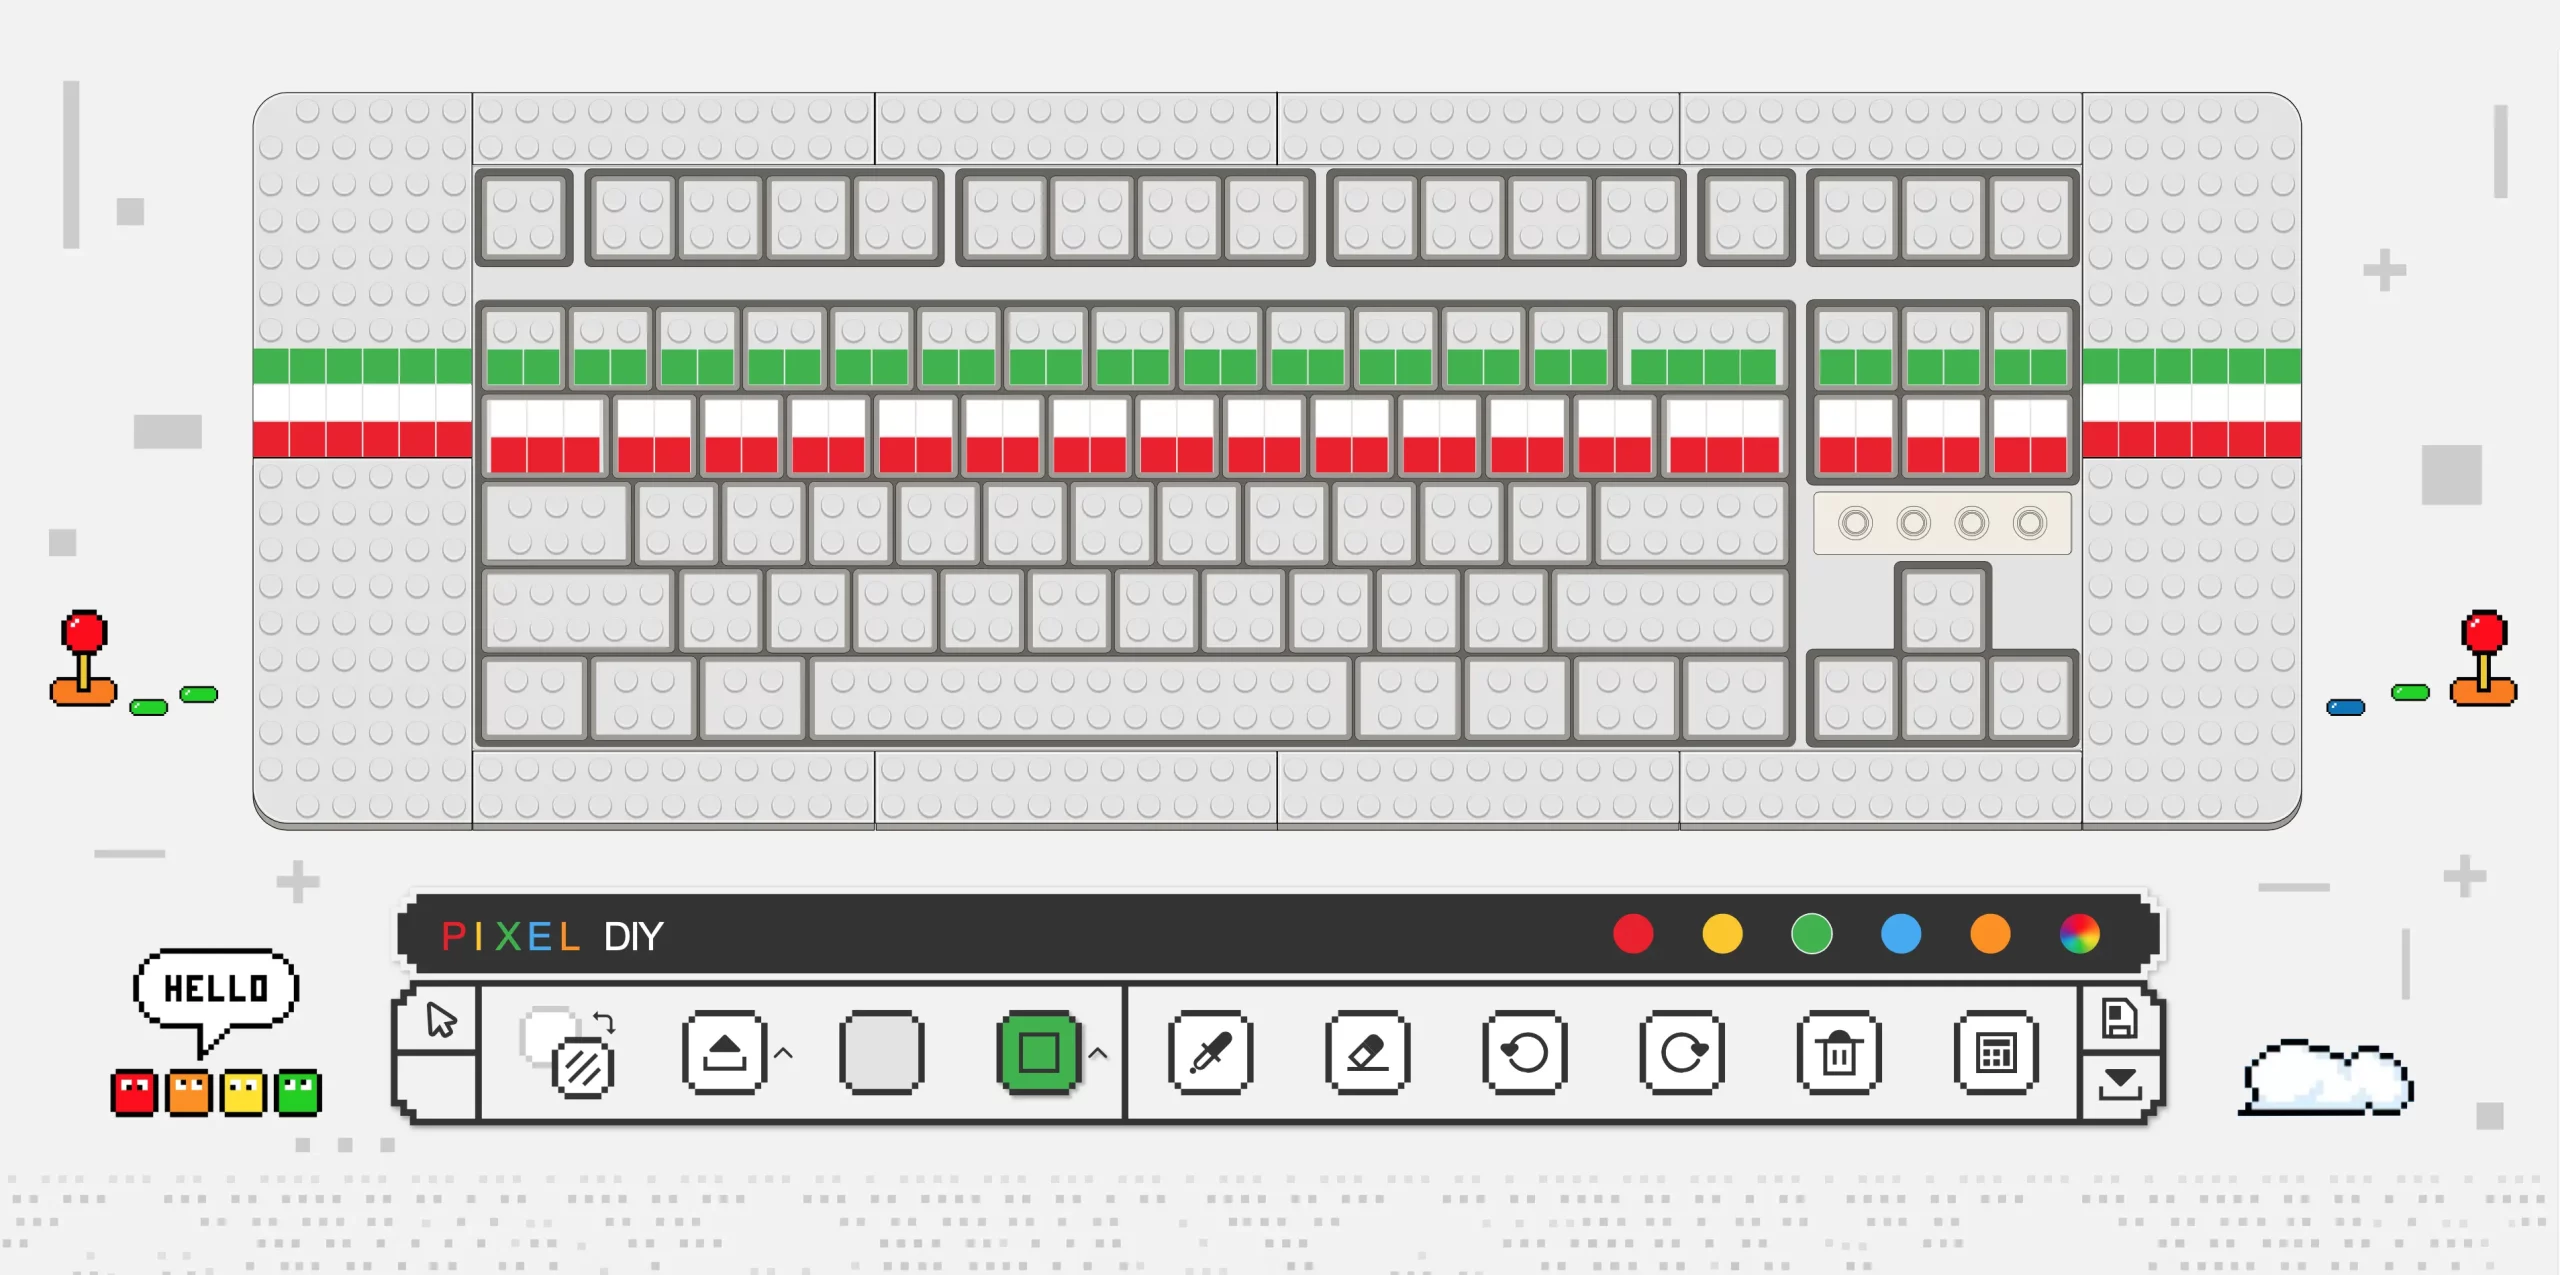 Thiết kế bàn phím Pixel